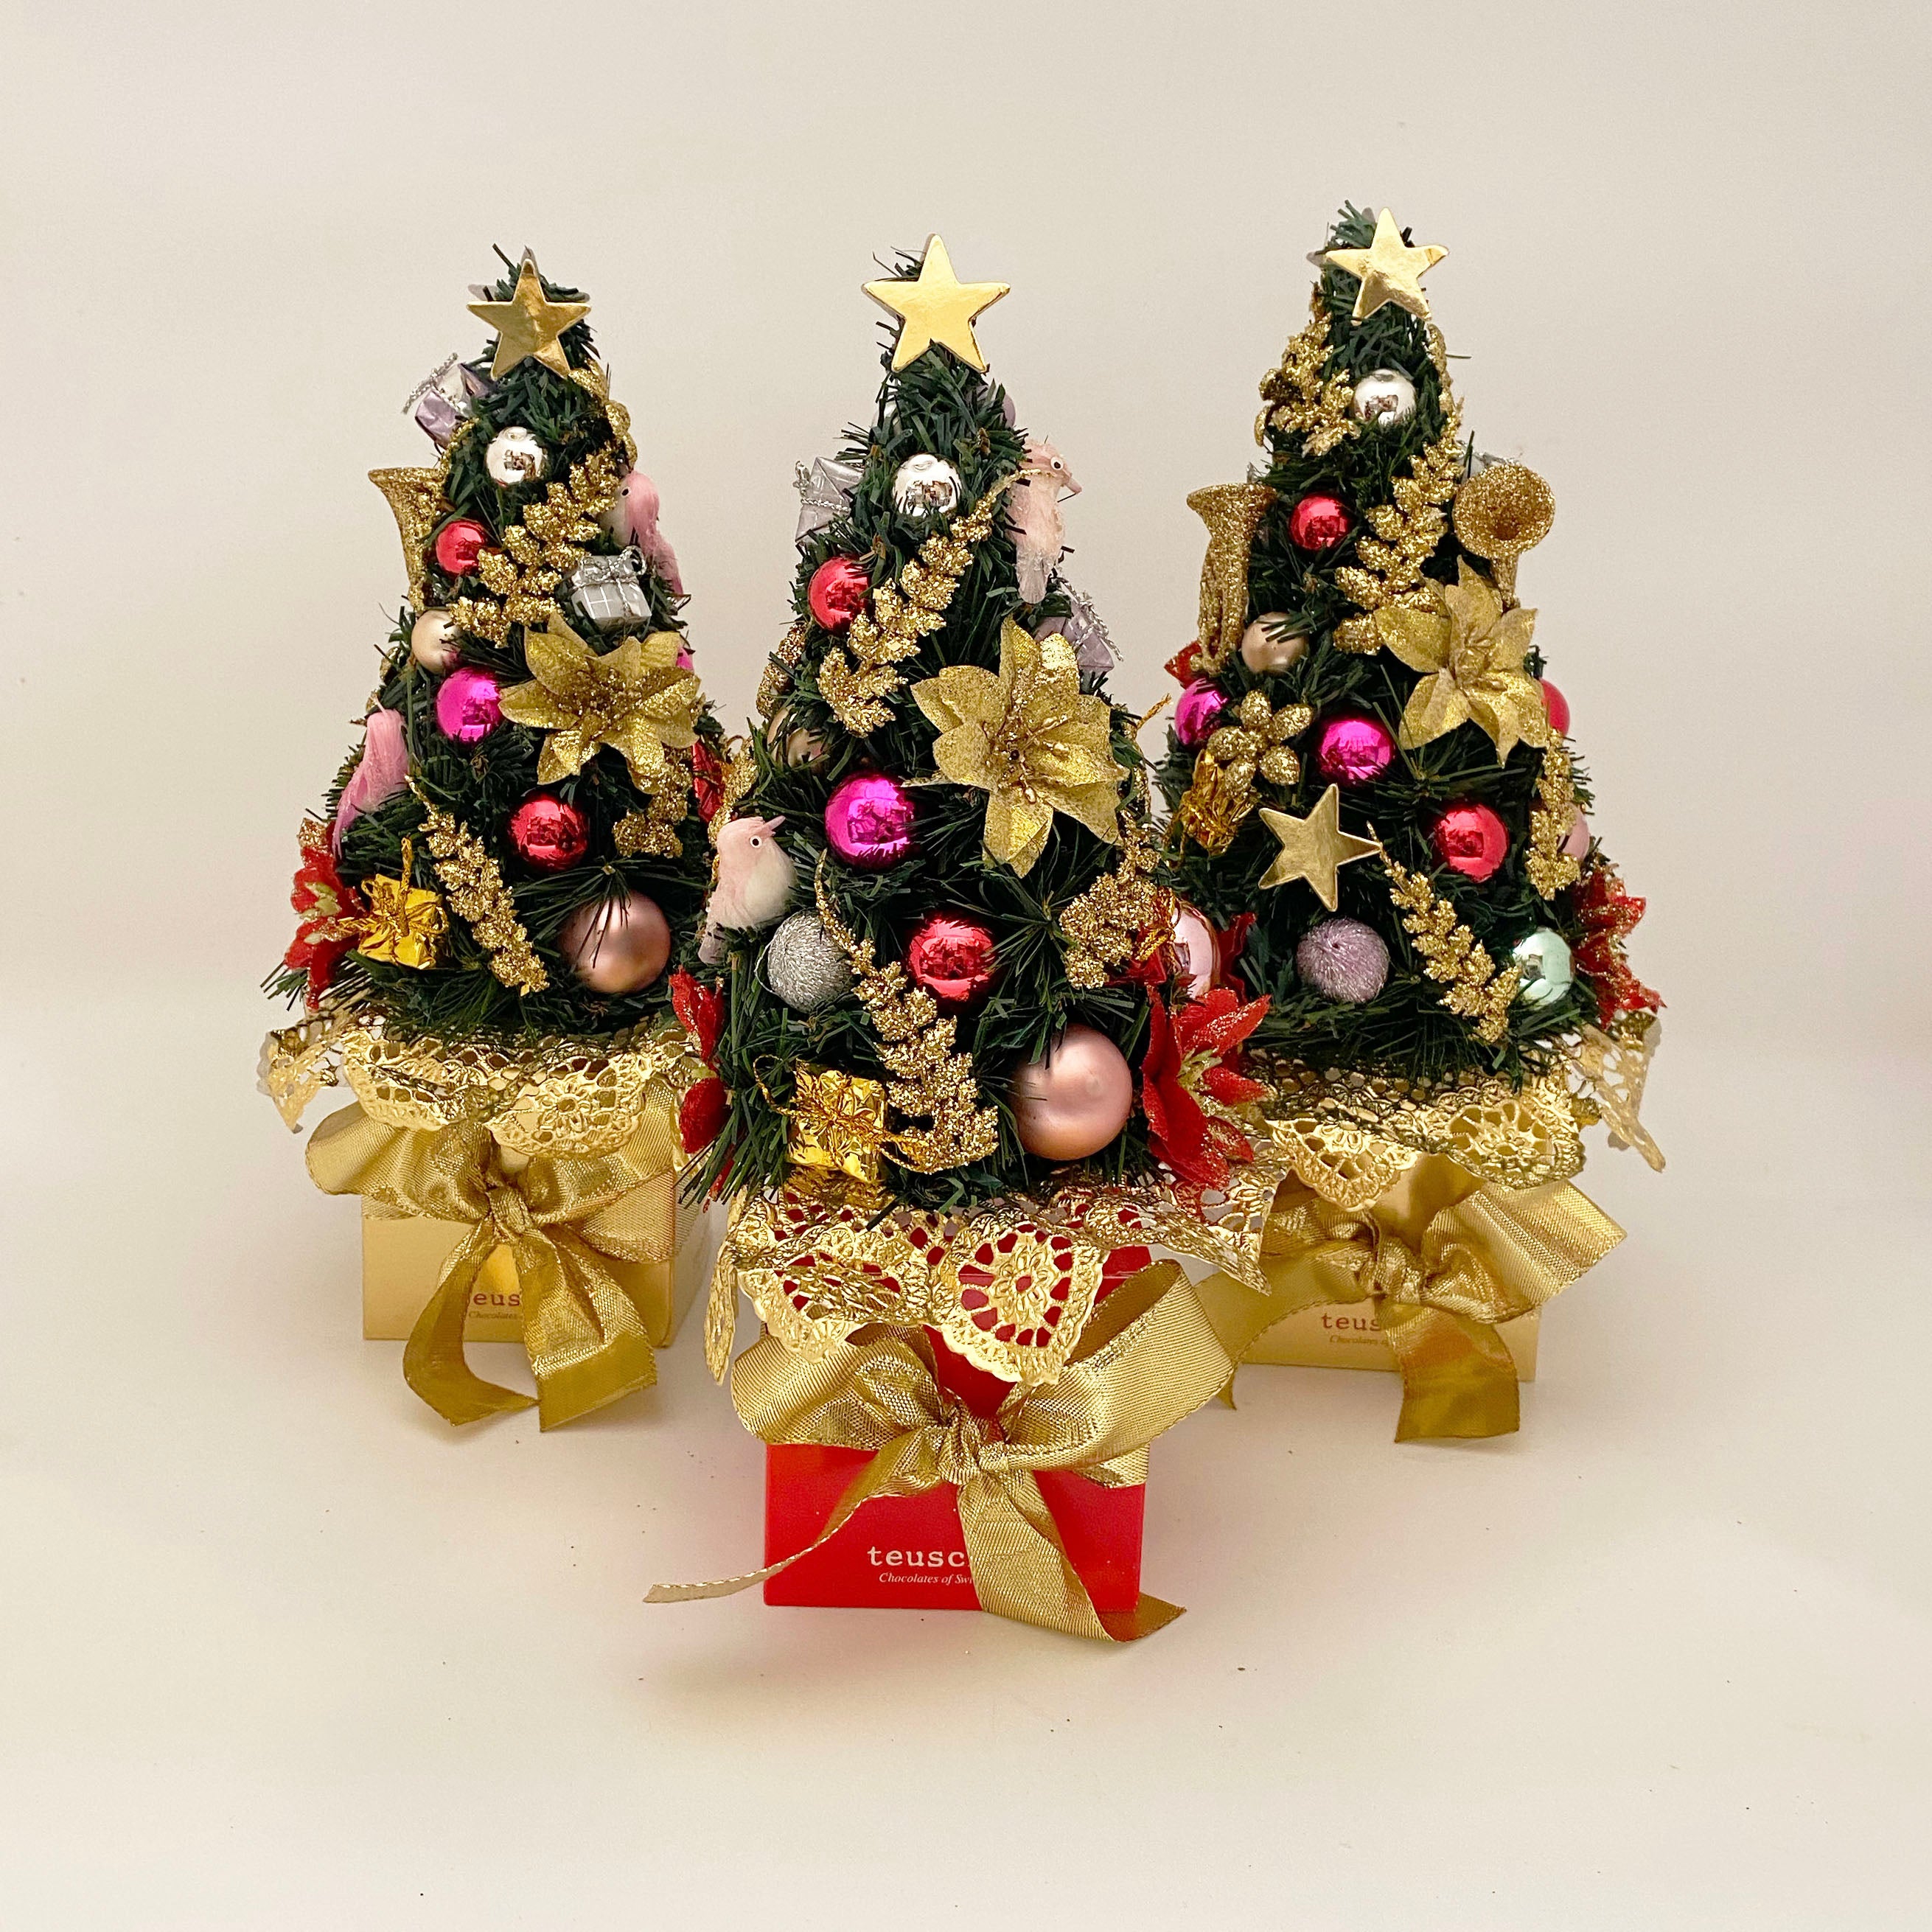 Christmas Tree Box (Ten Truffles)